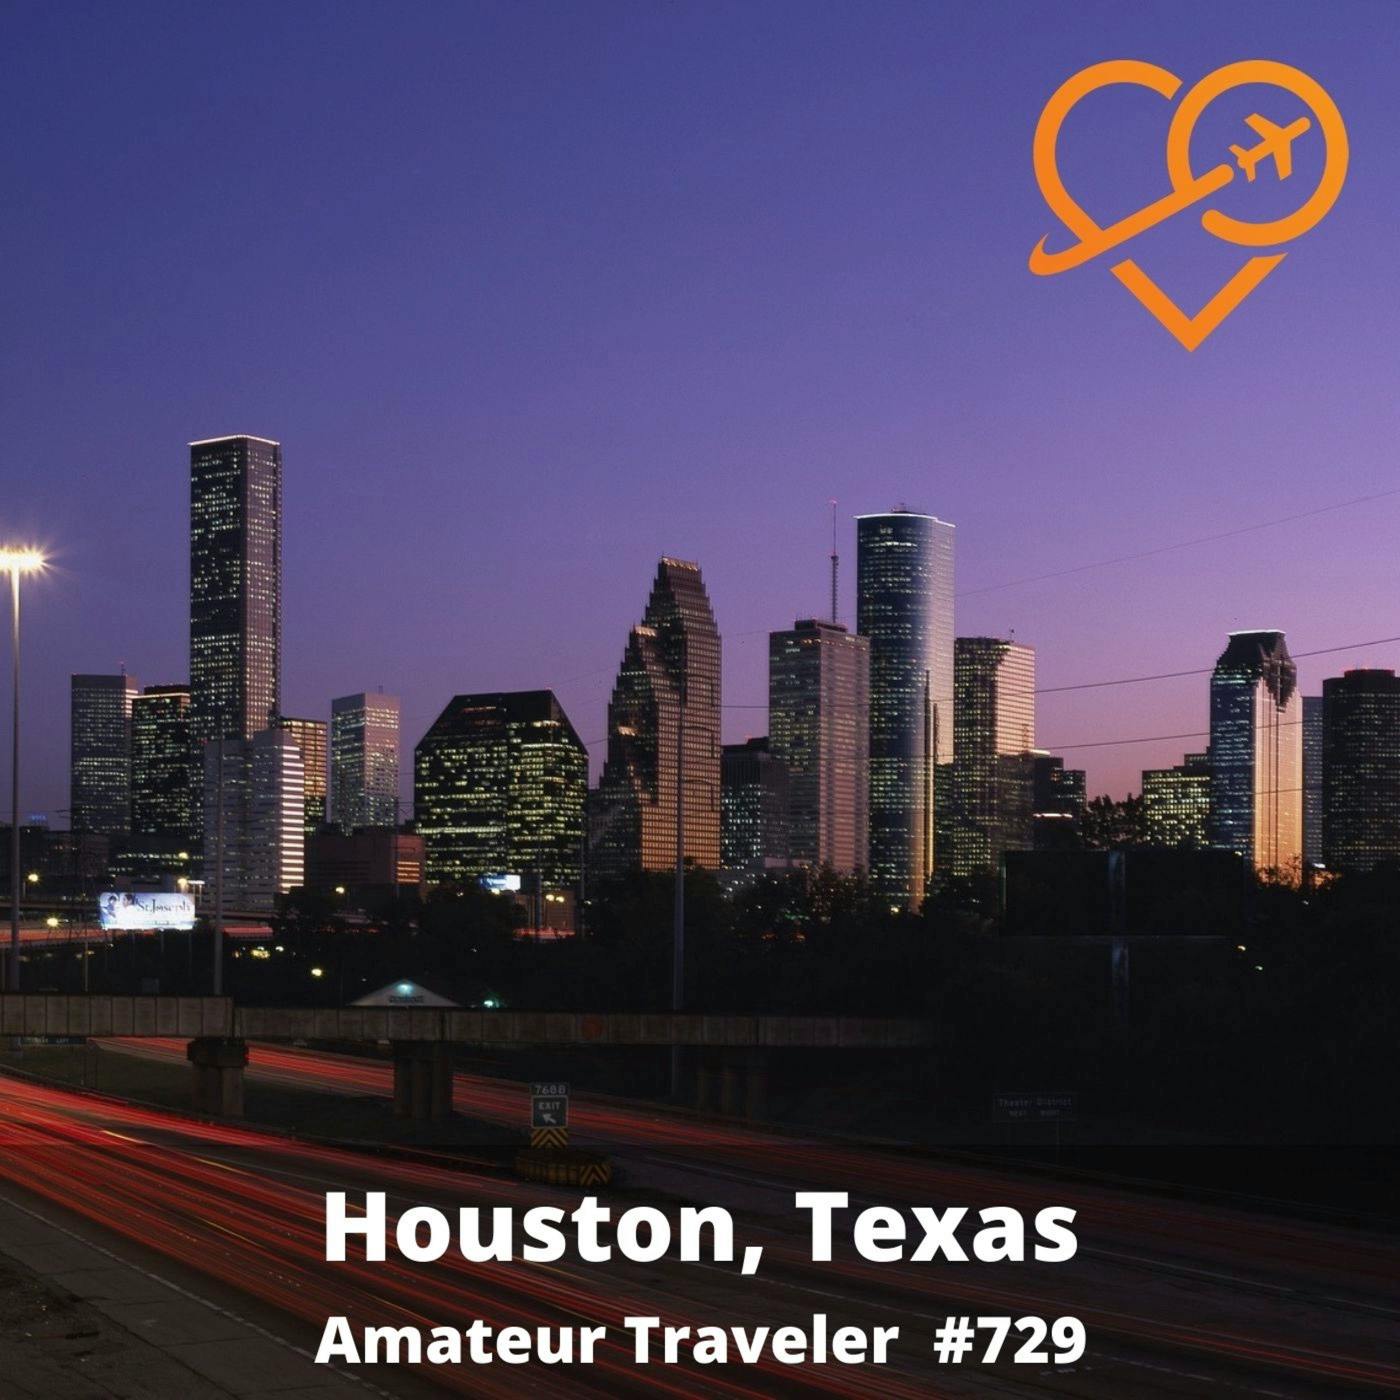 TA#729 - Travel to Houston, Texas